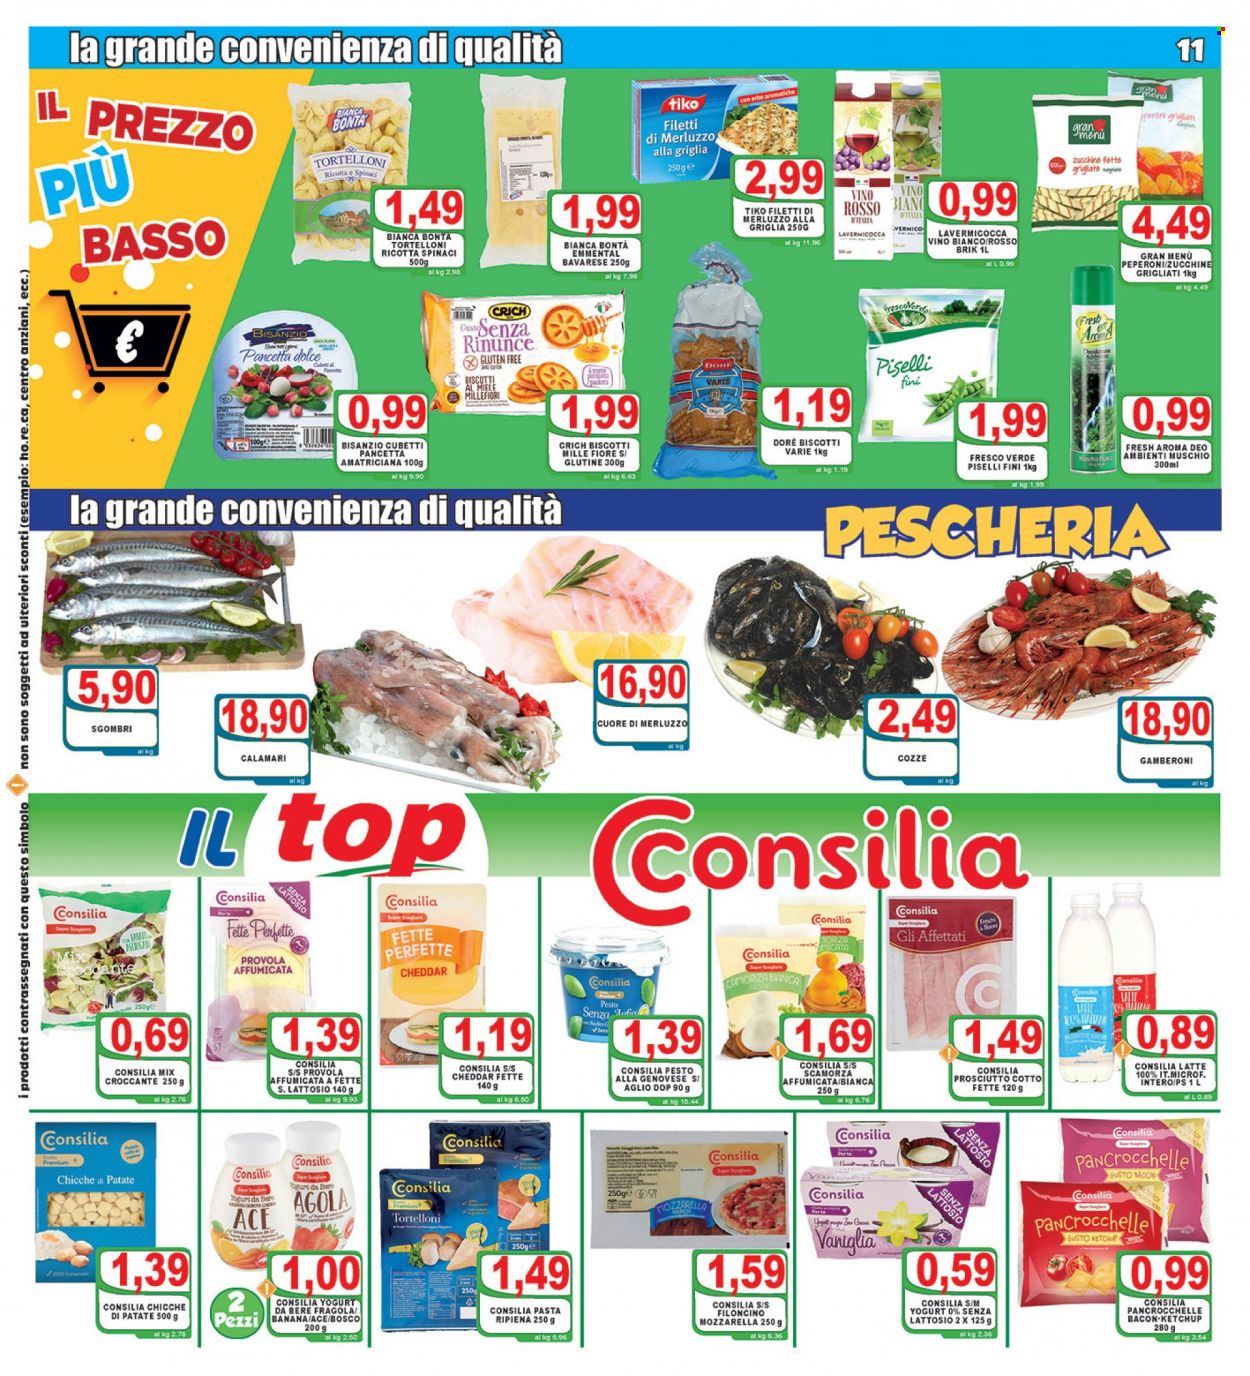 thumbnail - Volantino Top Supermercati - 24/11/2021 - 2/12/2021 - Prodotti in offerta - piselli, peperoni, zucchine, calamari, cozze, filetti di merluzzo, sgombro, merluzzo, gamberoni, prosciutto, pancetta, prosciutto cotto, bacon, mozzarella, emmental, scamorza, cheddar, provola, yogurt, latte, chicche, biscotti, pesto, pesto alla genovese, pasta, tortelloni, ketchup, miele millefiori, mix frutta secca, vino bianco, vino, Ace. Pagina 11.